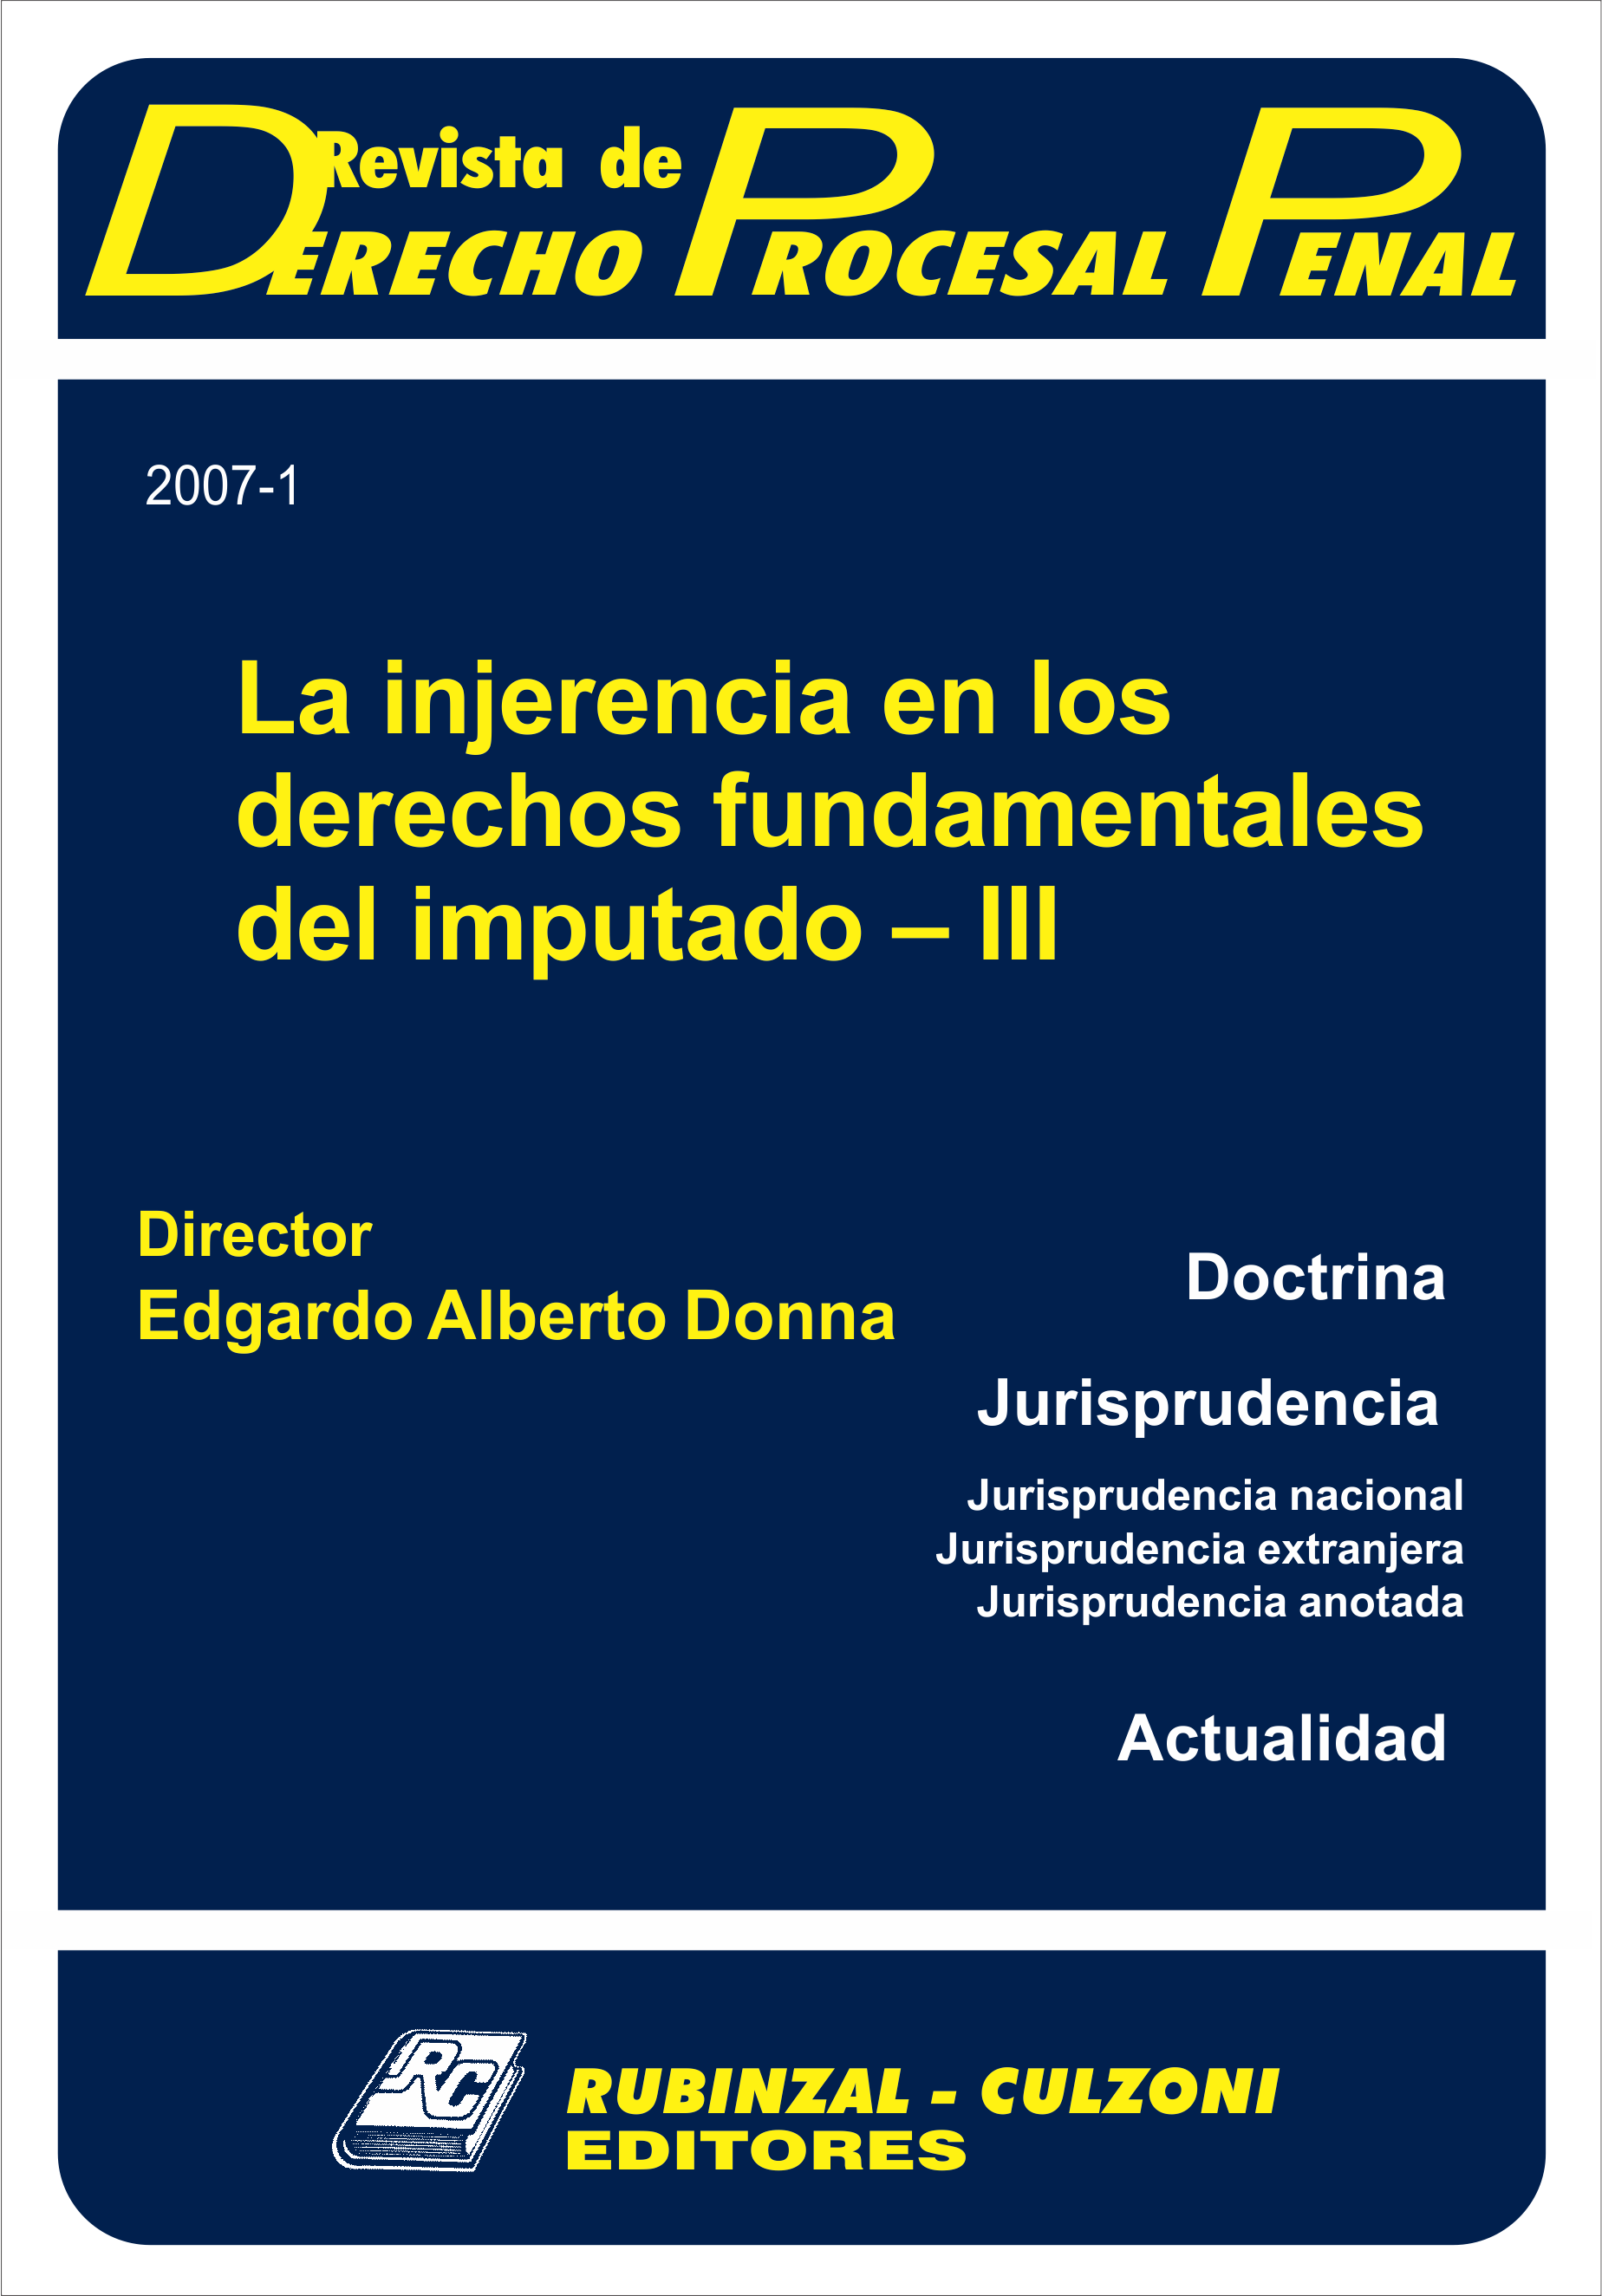 Revista de Derecho Procesal Penal - La injerencia en los derechos fundamentales del imputado - III